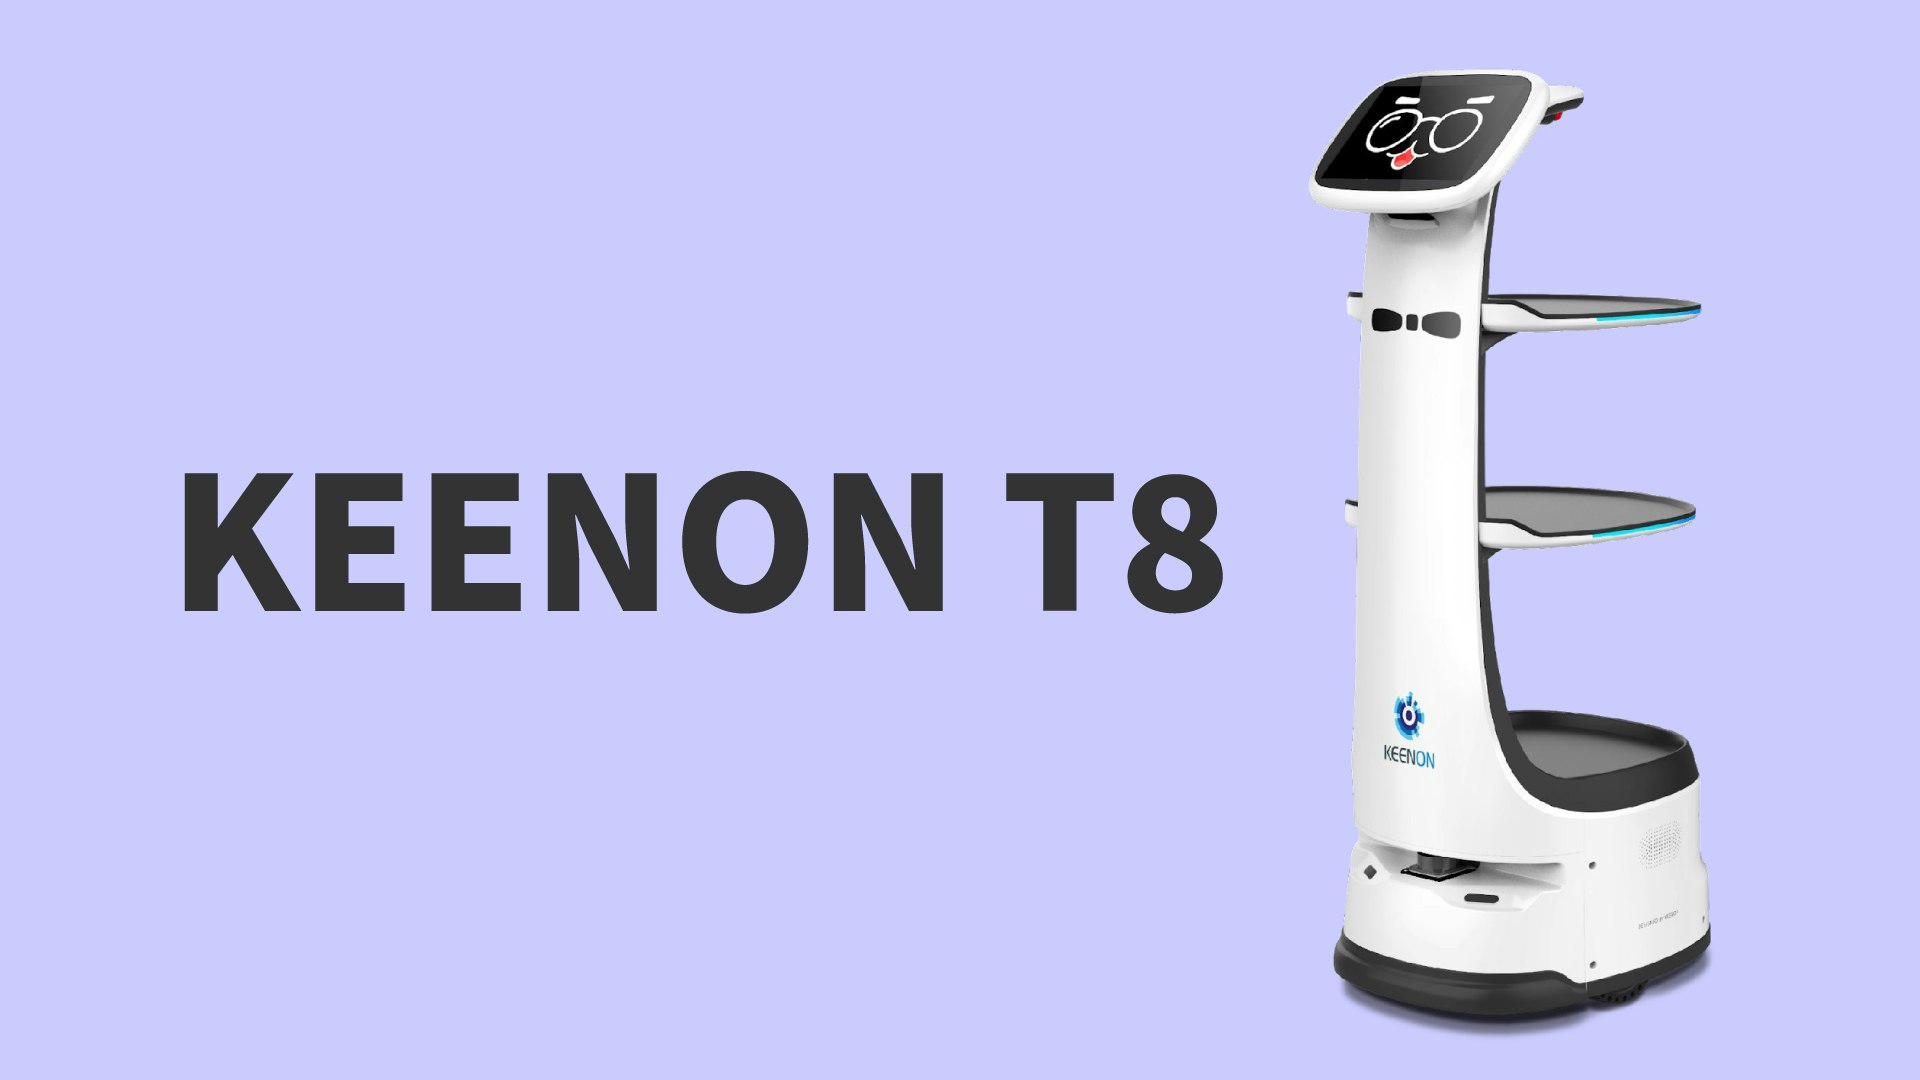 55cmの道幅も安全・正確に走行
配膳・運搬ロボット「KEENON T8」のキービジュアル